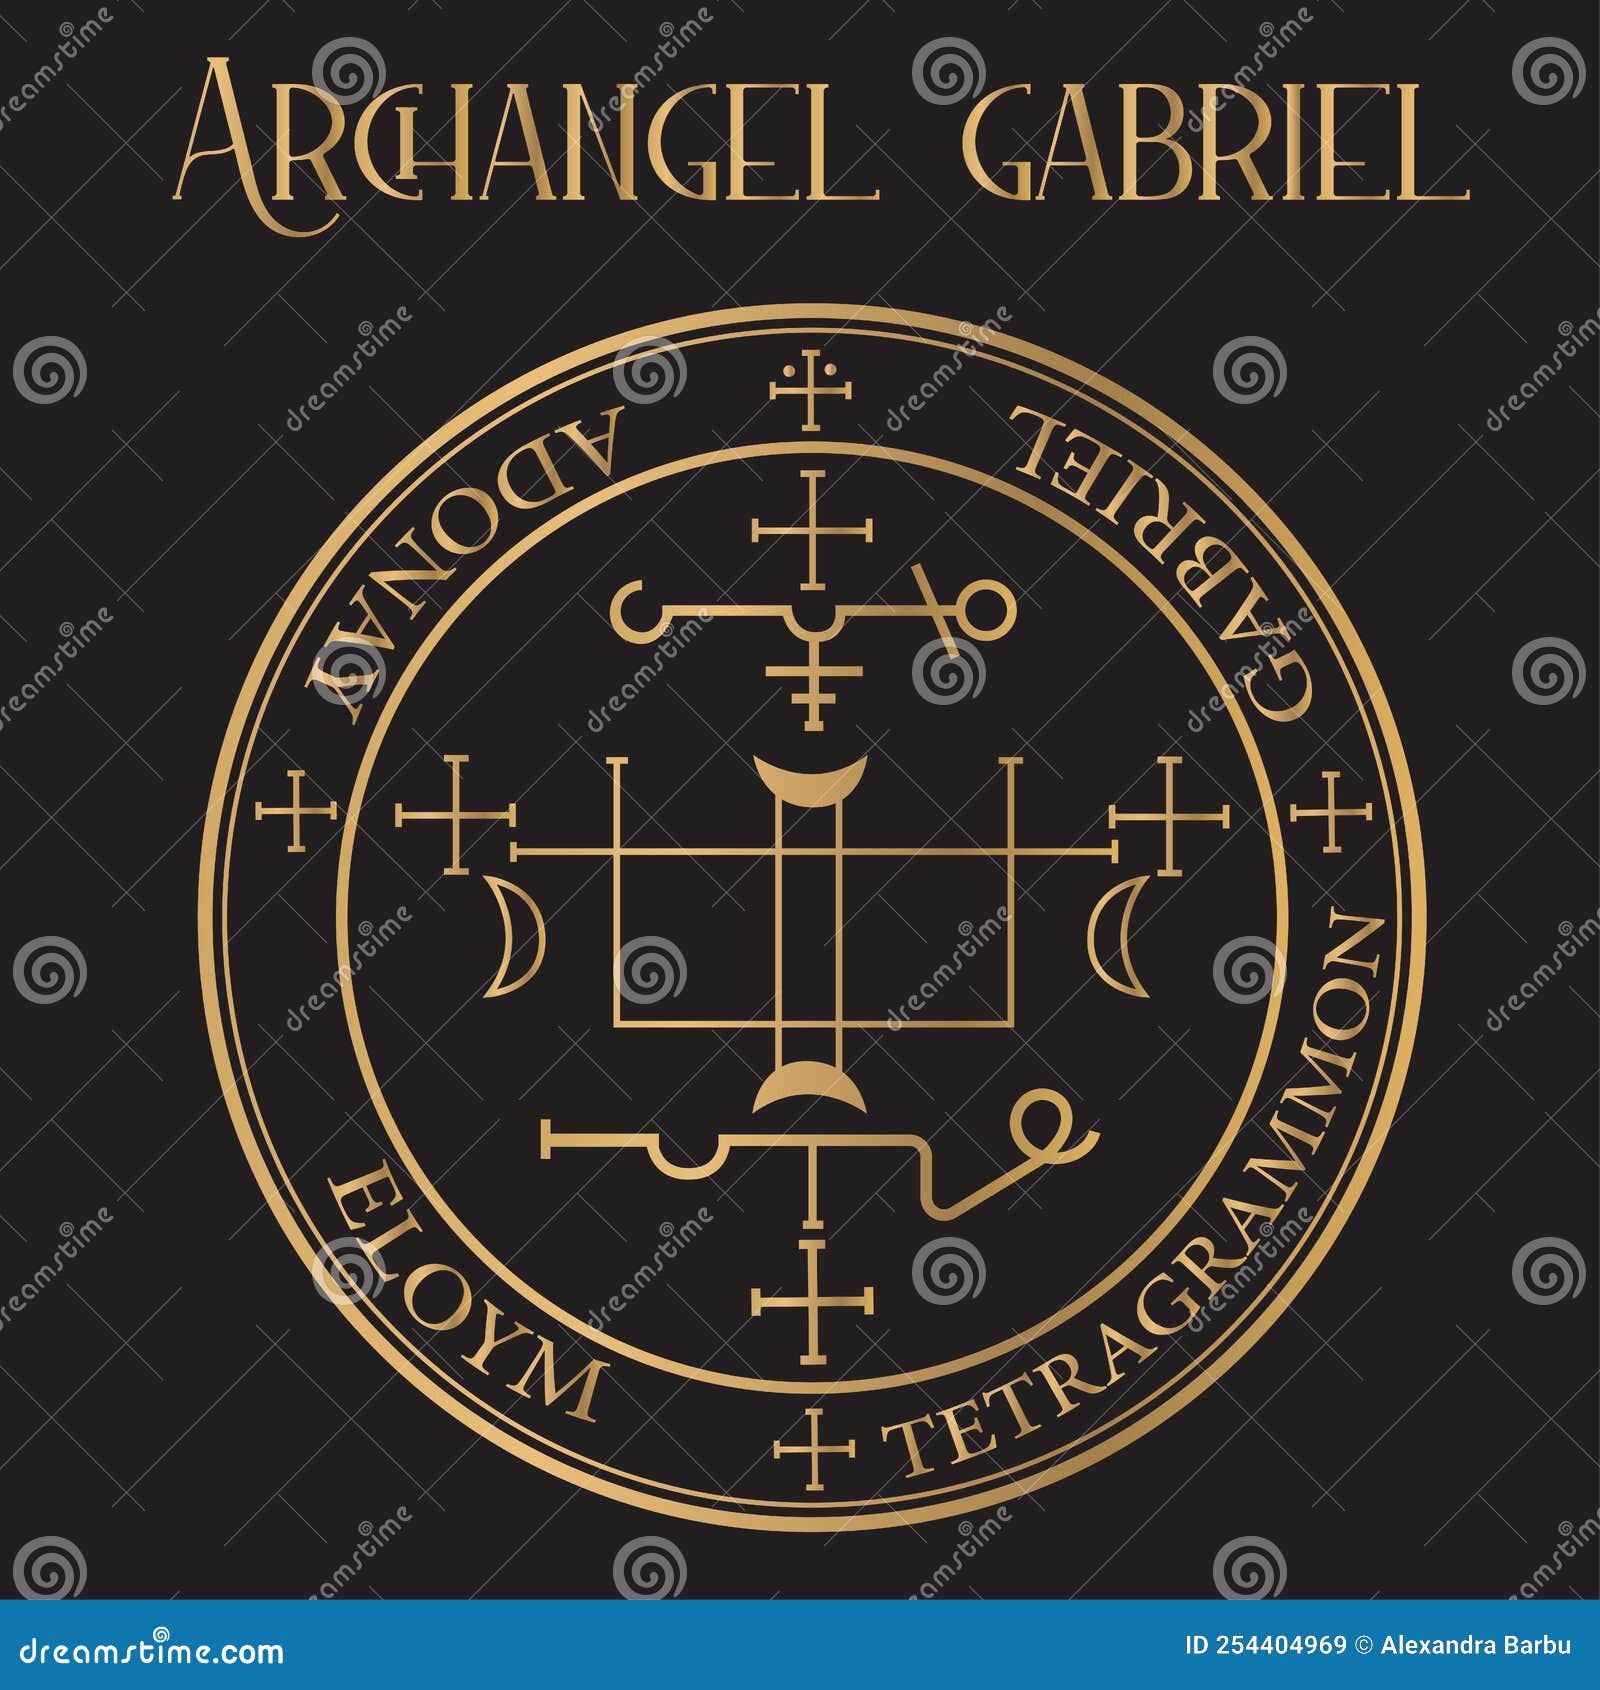 archangel gabriel seal - Ã¢â¬Ågod is my strengthÃ¢â¬Â. archangel of wisdom, revelation, prophecy, and visions